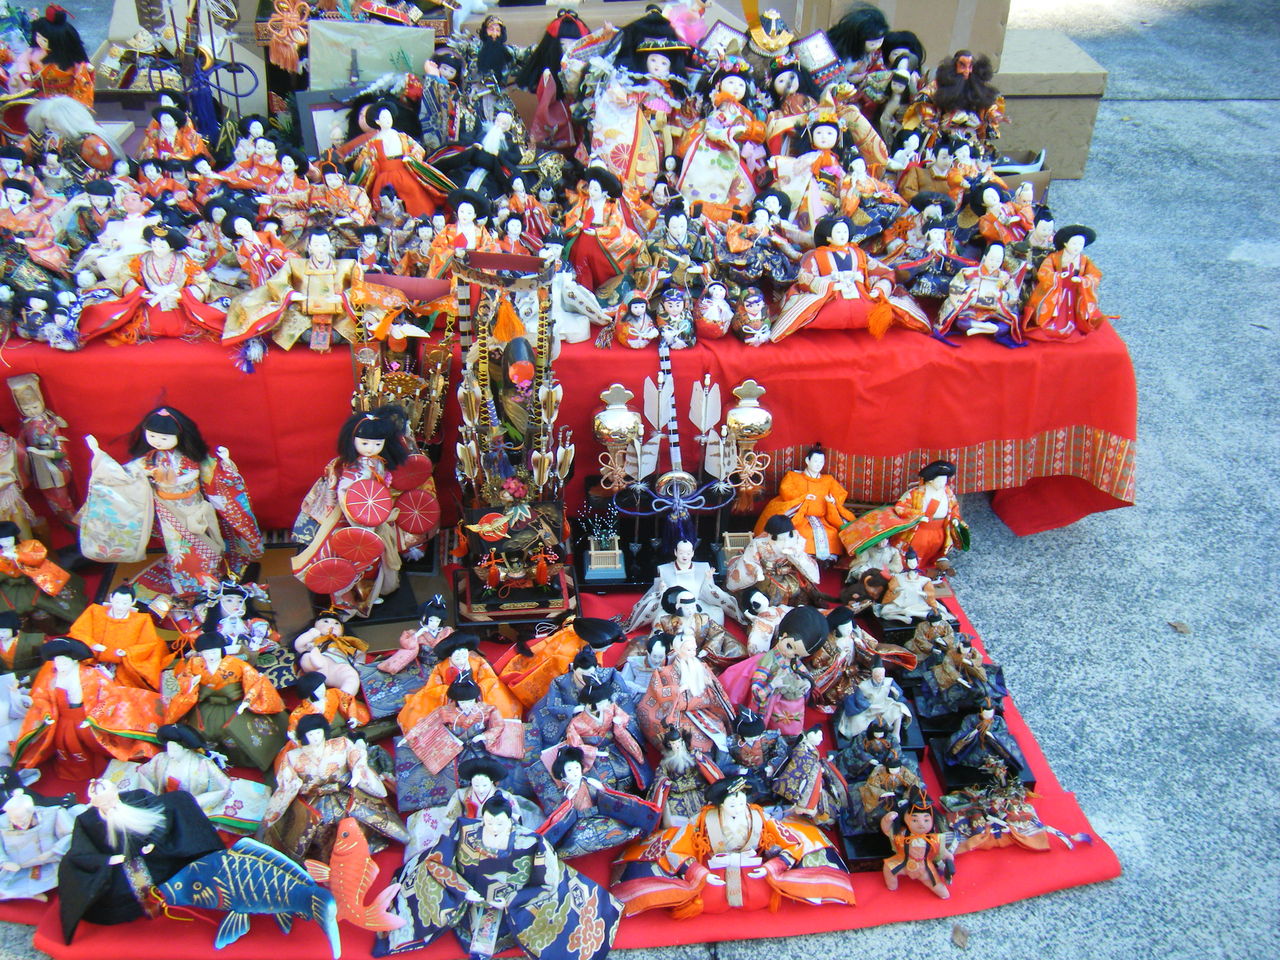 人形供養祭